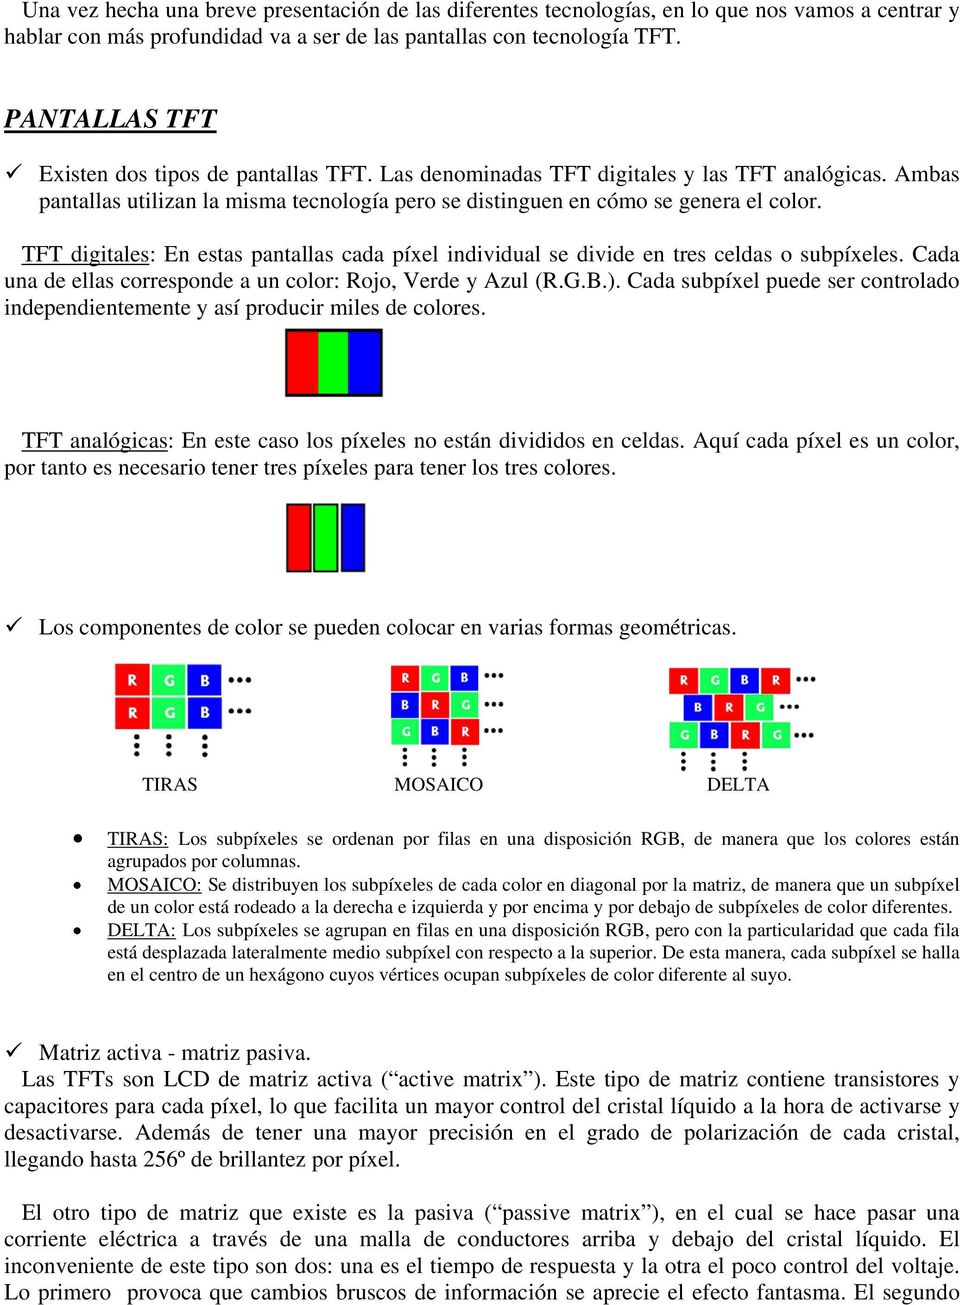 TFT digitales: En estas pantallas cada píxel individual se divide en tres celdas o subpíxeles. Cada una de ellas corresponde a un color: Rojo, Verde y Azul (R.G.B.).